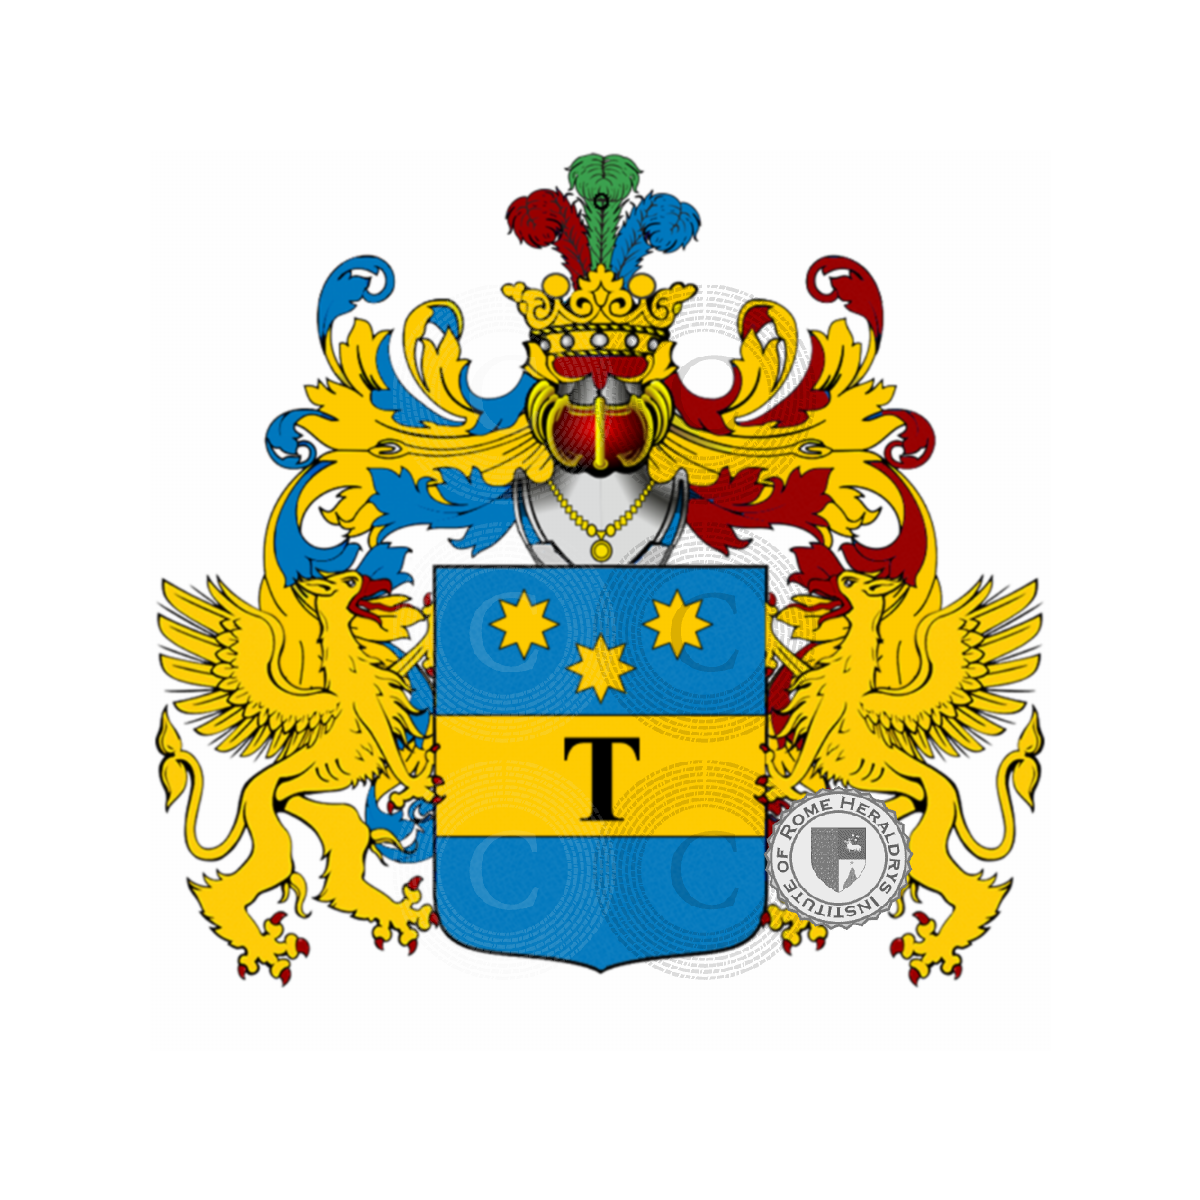 Wappen der Familietognoni